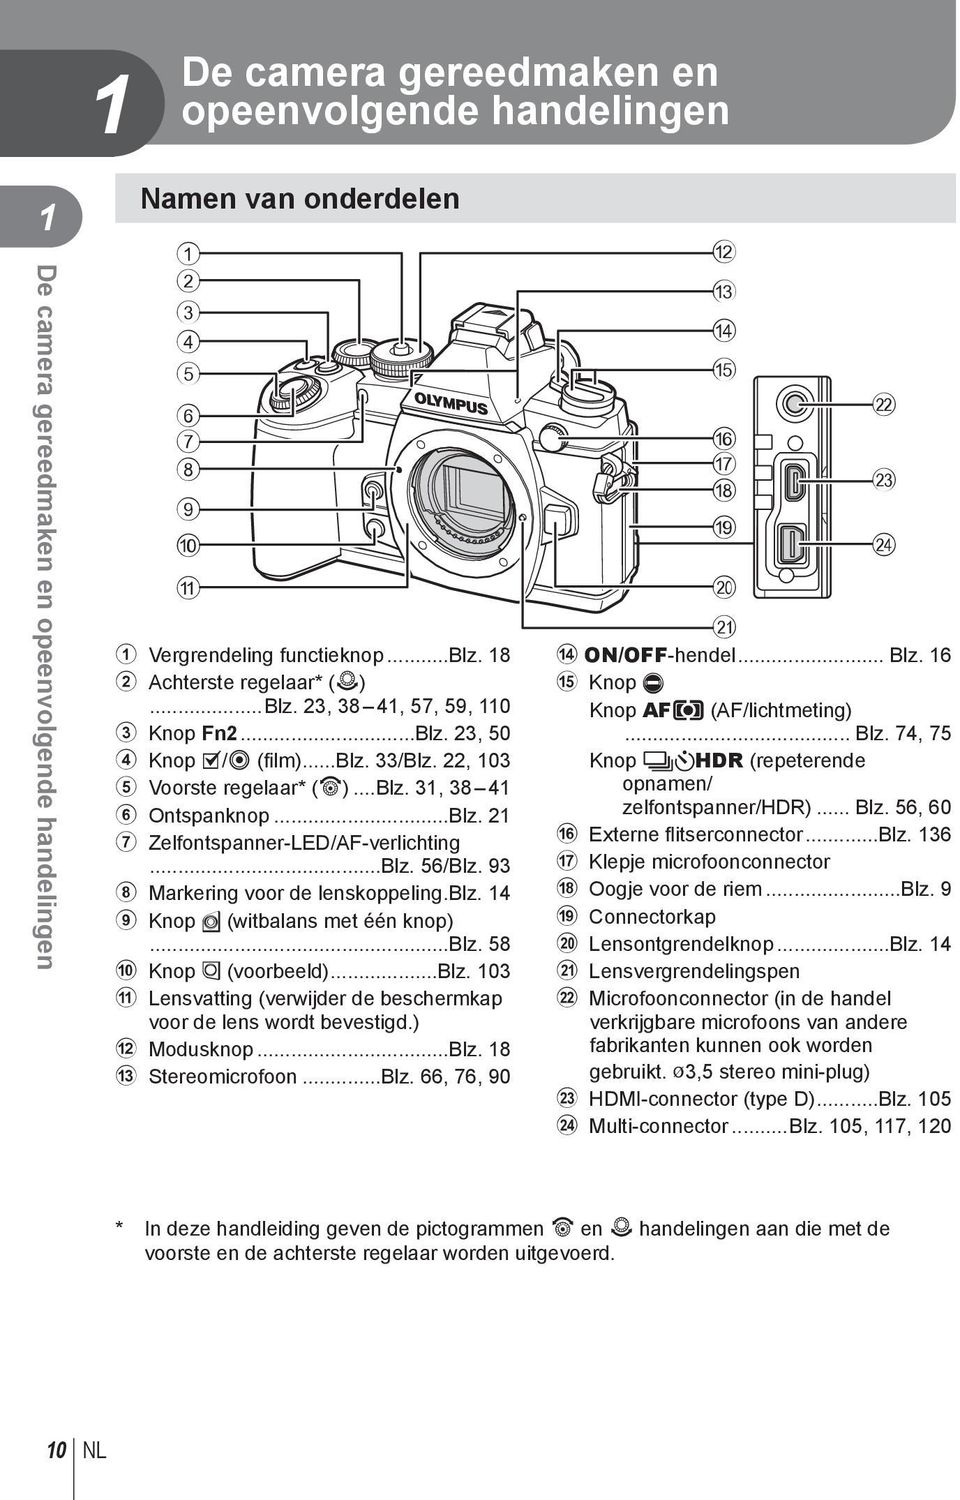 ..Blz. 56/Blz. 93 8 Markering voor de lenskoppeling.blz. 14 9 Knop Y (witbalans met één knop)...blz. 58 0 Knop Z (voorbeeld)...blz. 103 a Lensvatting (verwijder de beschermkap voor de lens wordt bevestigd.